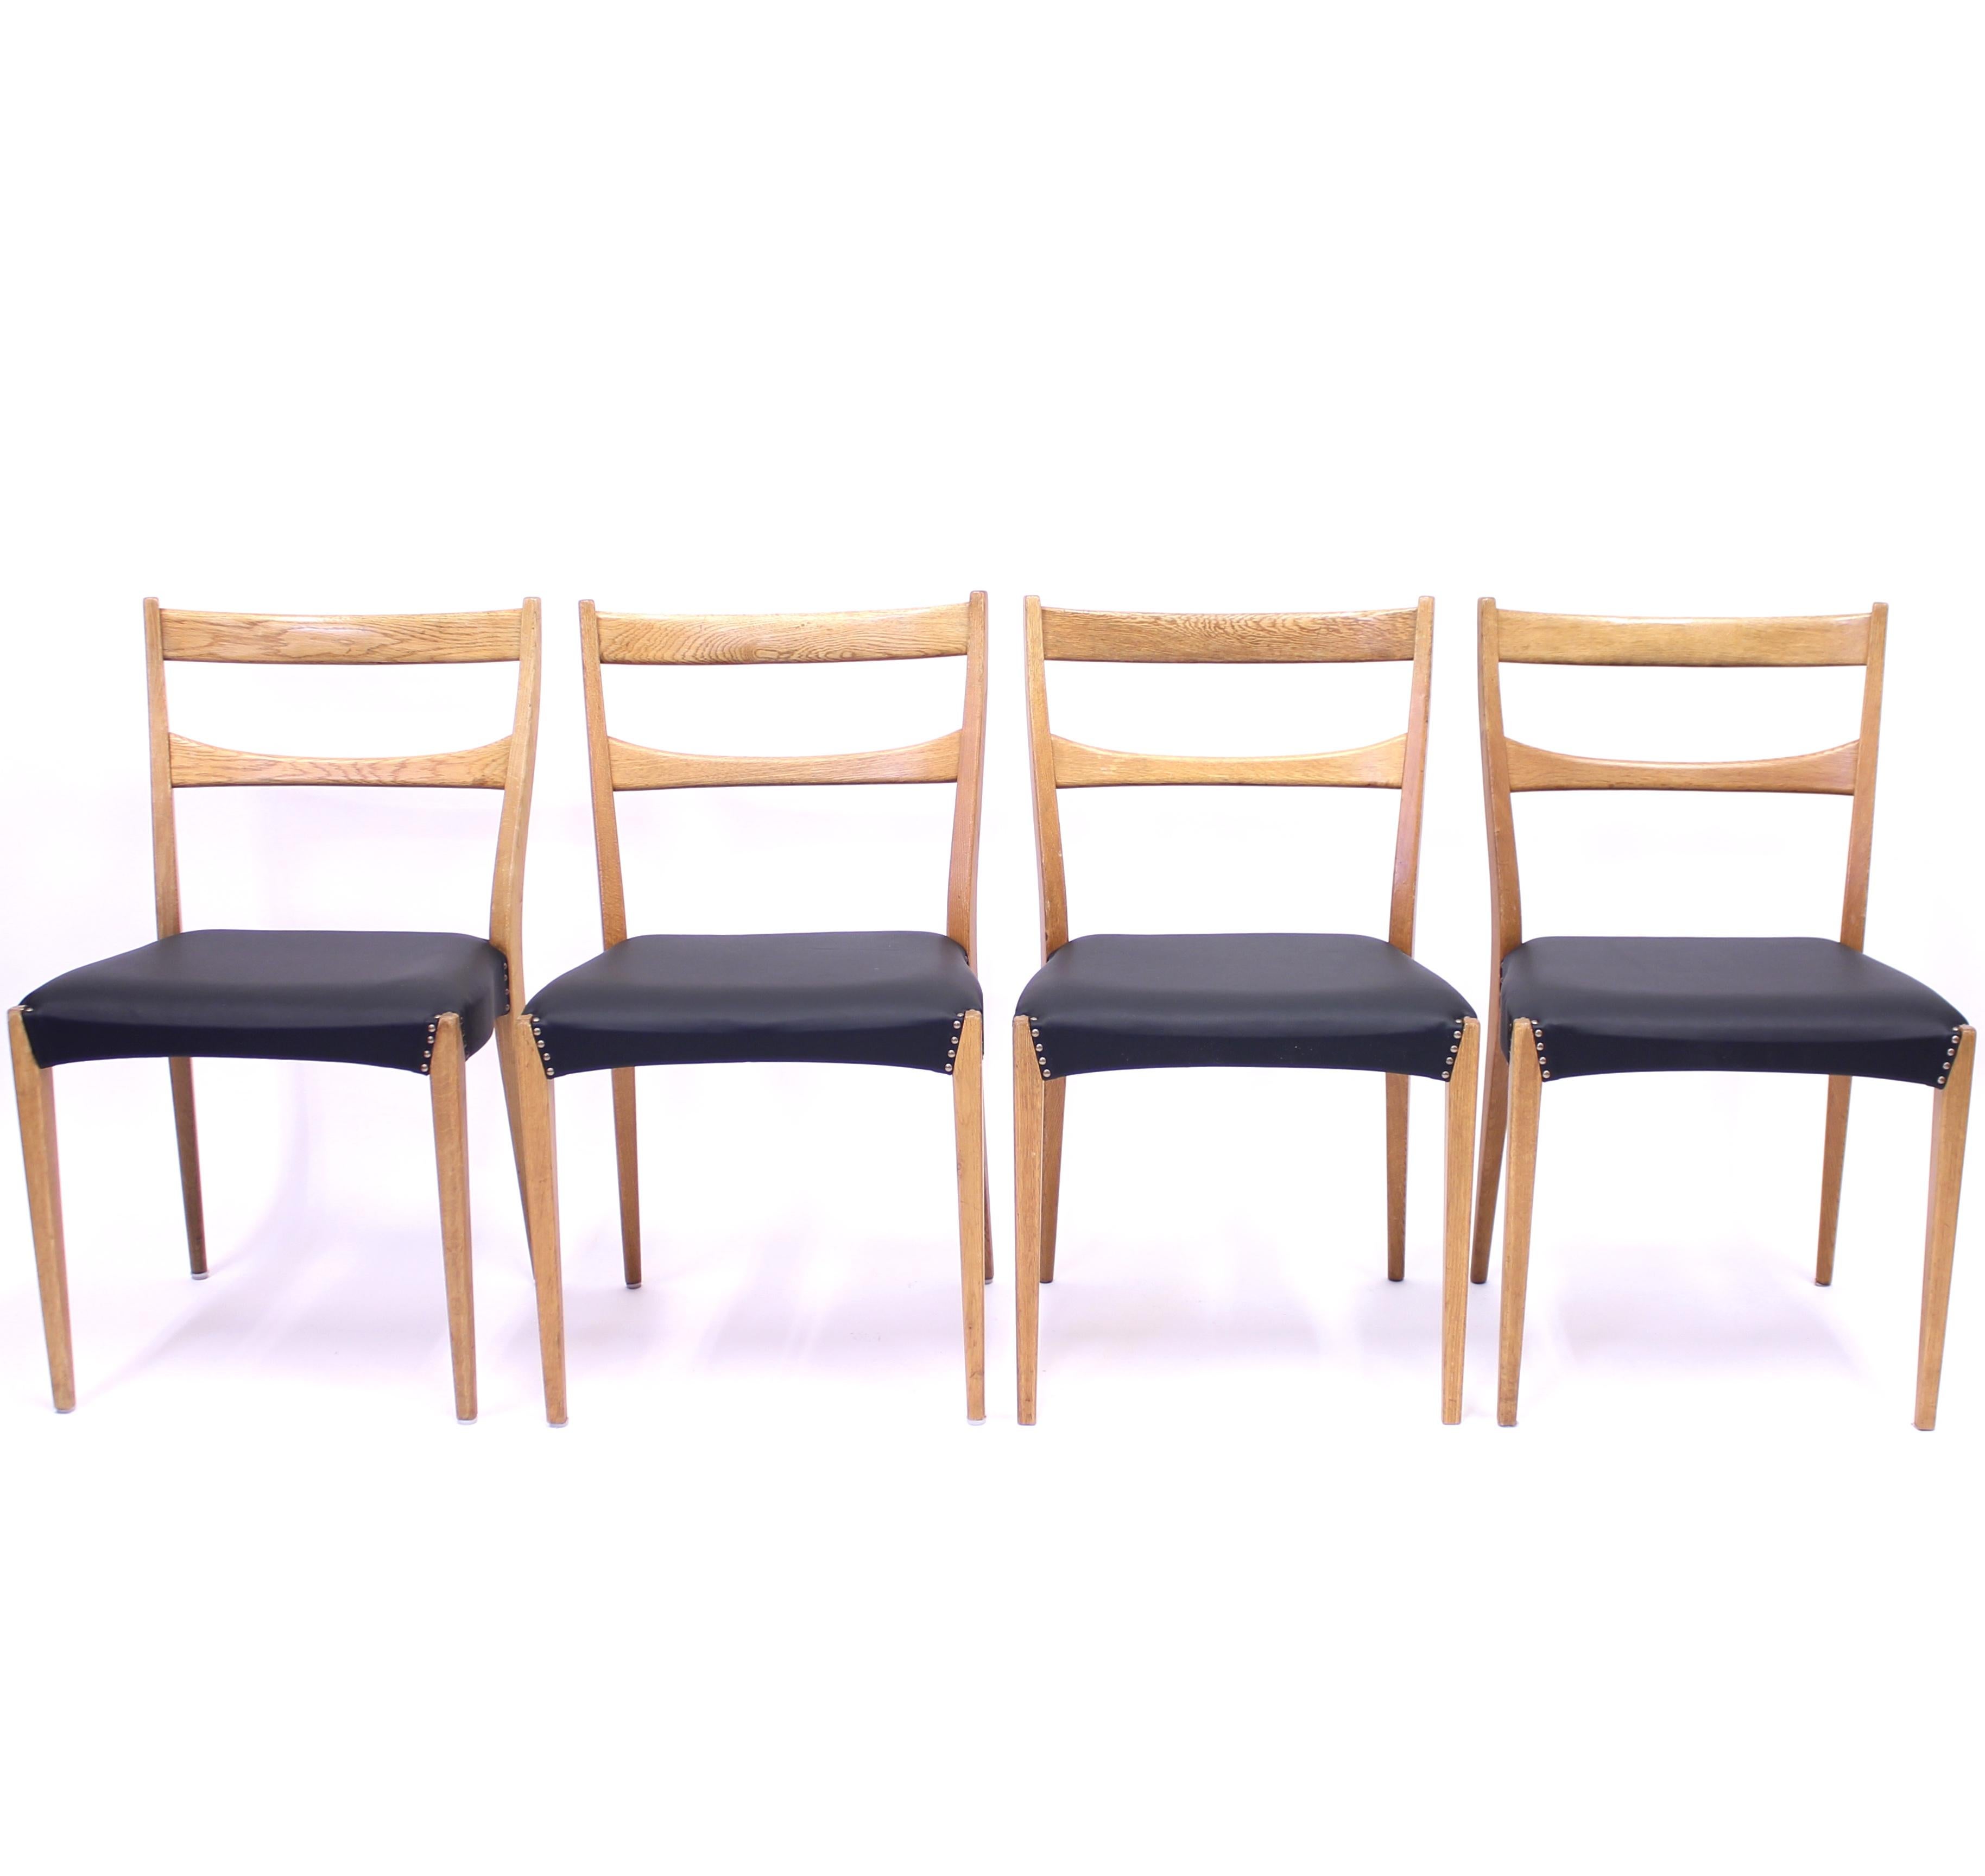 Chaises à manger scandinaves en chêne dans le style de Josef Frank pour Svenskt Tenn, très probablement suédoises, datant du milieu du siècle dernier avec de nouveaux sièges en cuir noir. Une apparence légère grâce à un cadre soigné et bien conçu.